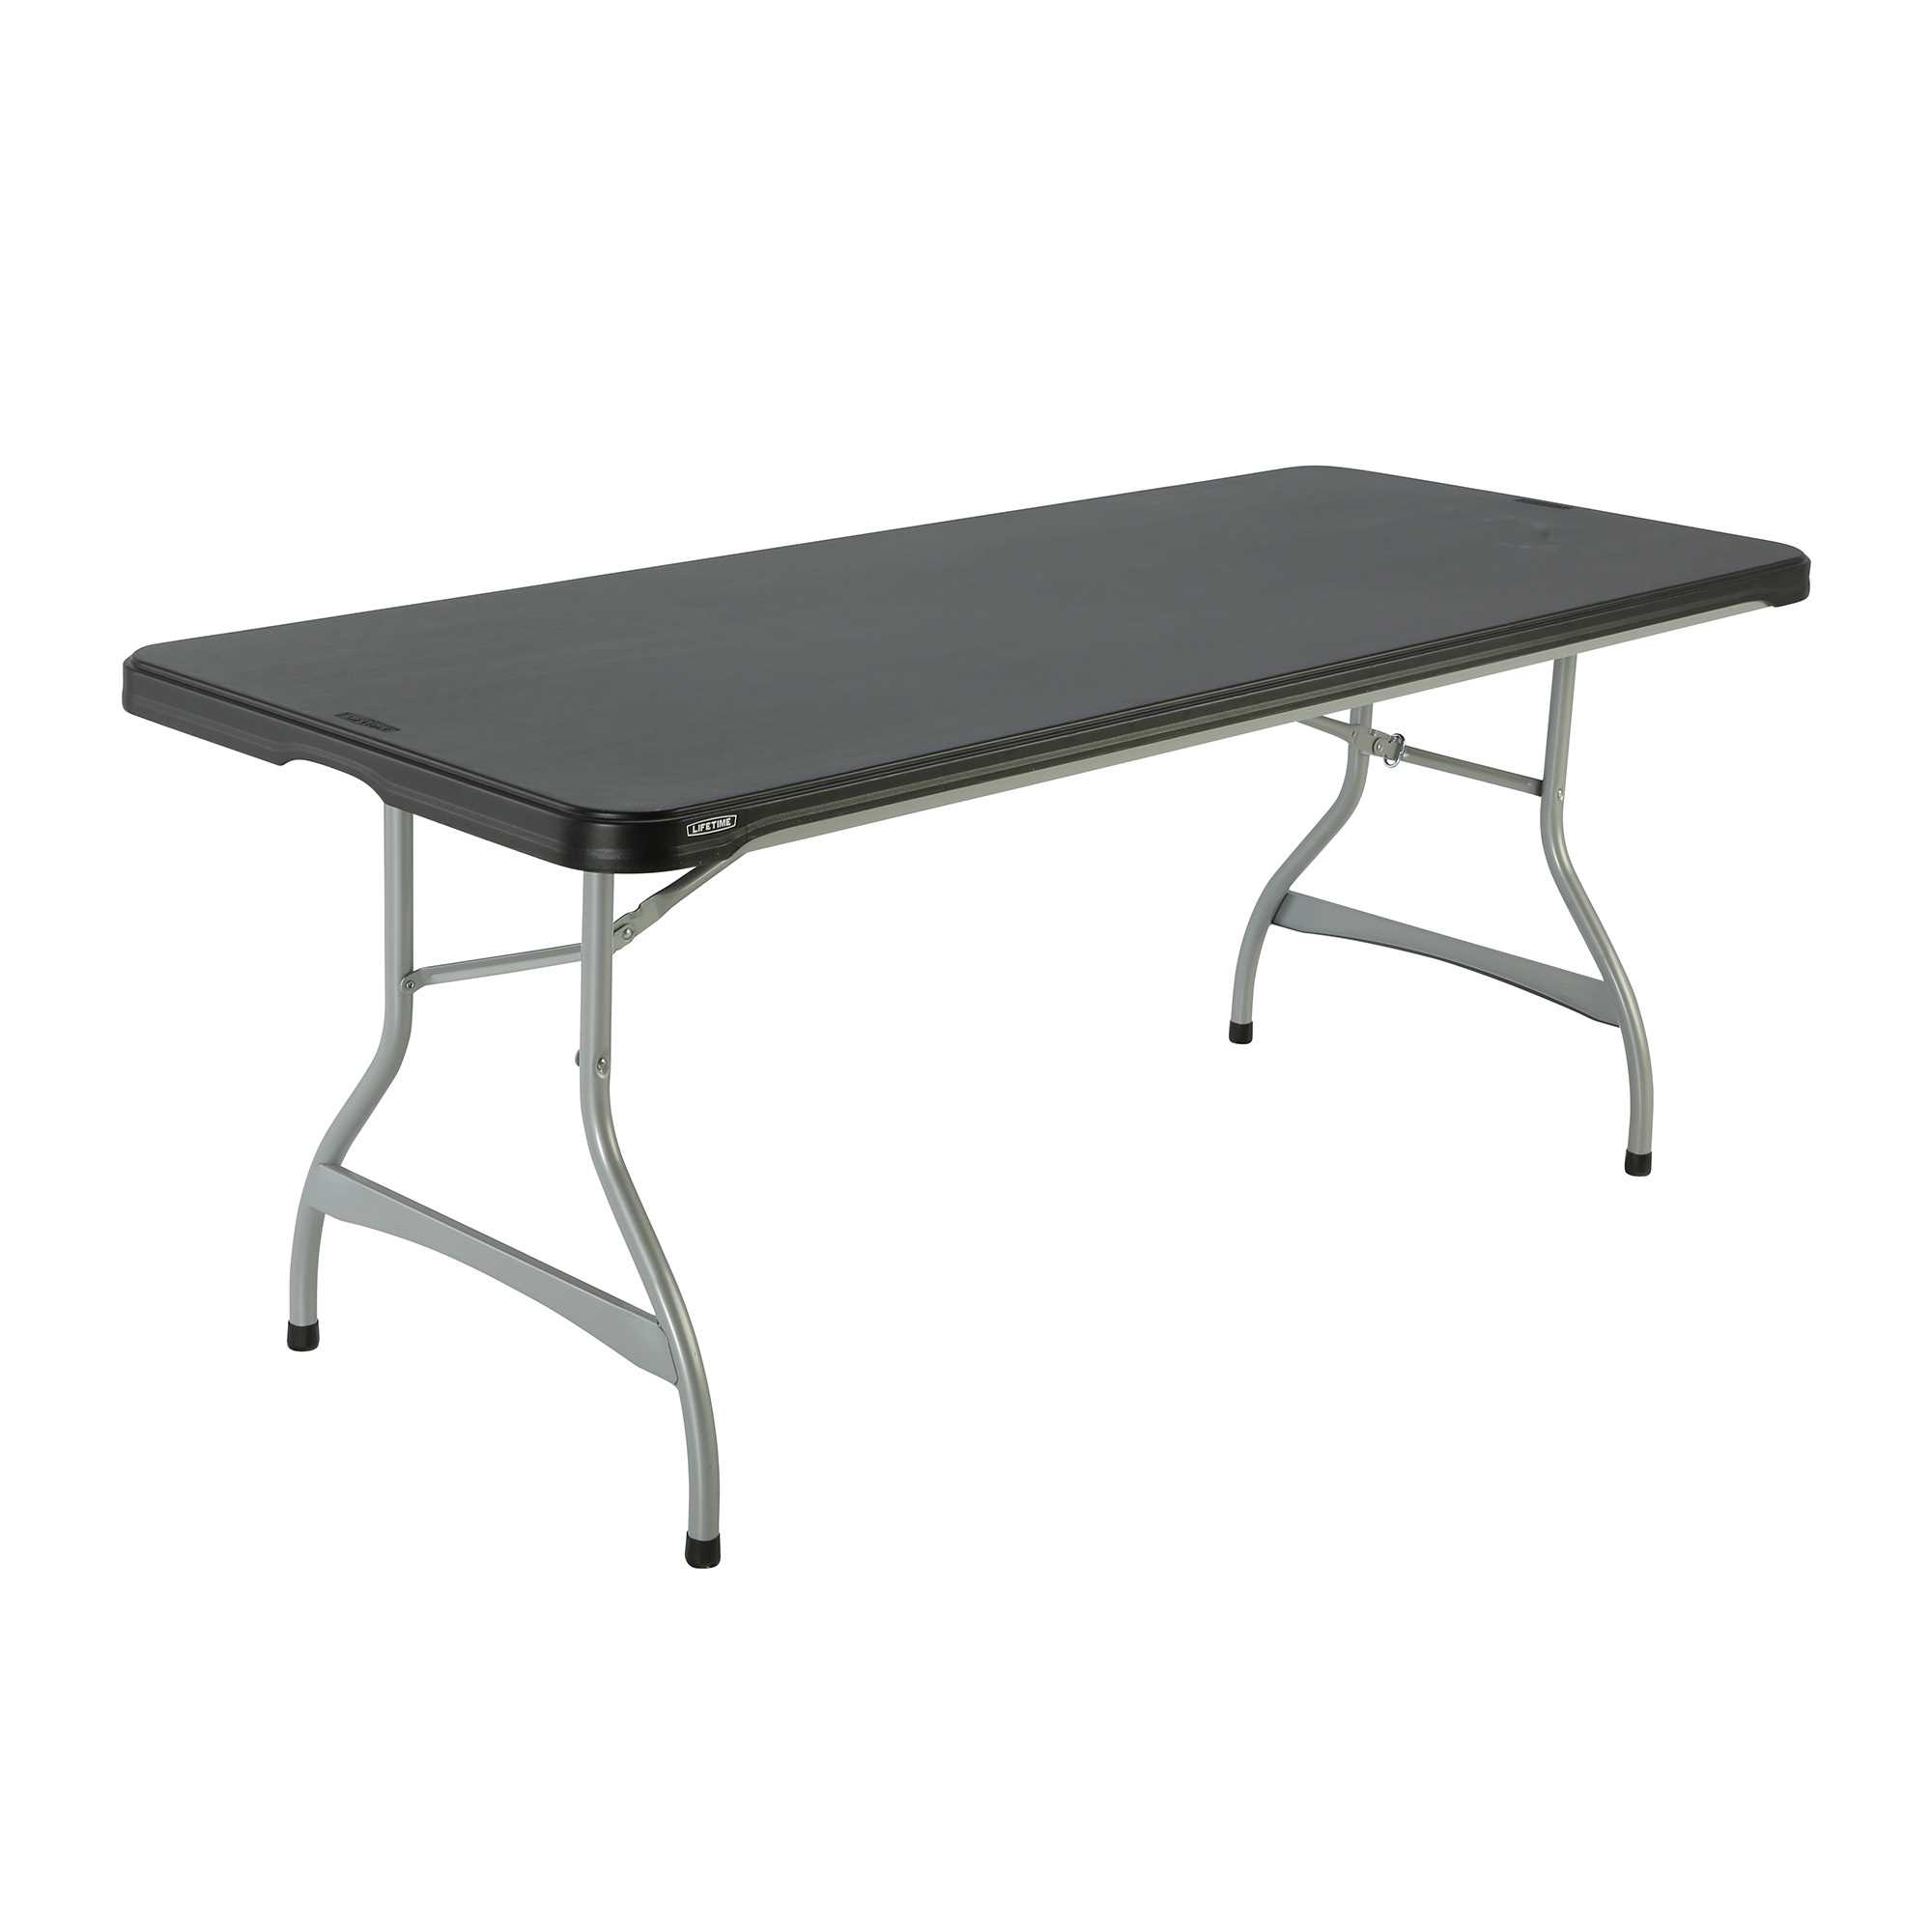 6ft Rectangular table 183cm 80350